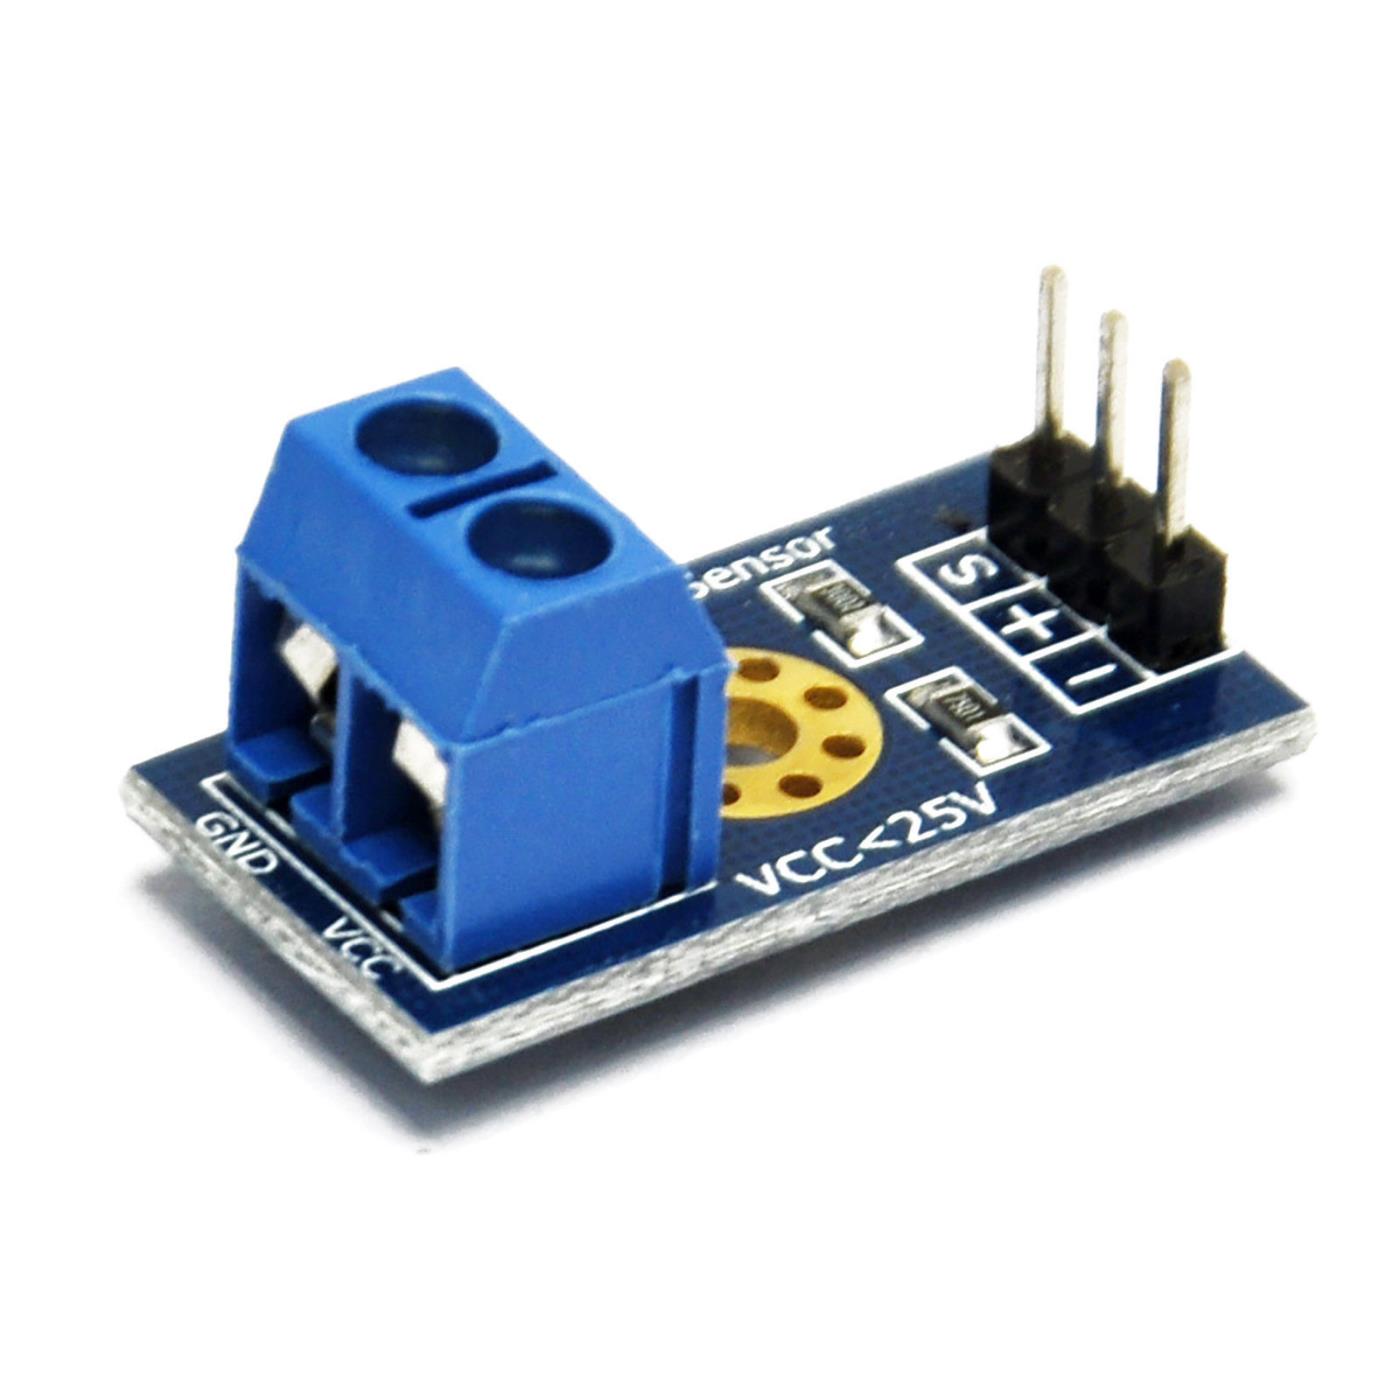 Voltage detection sensor module